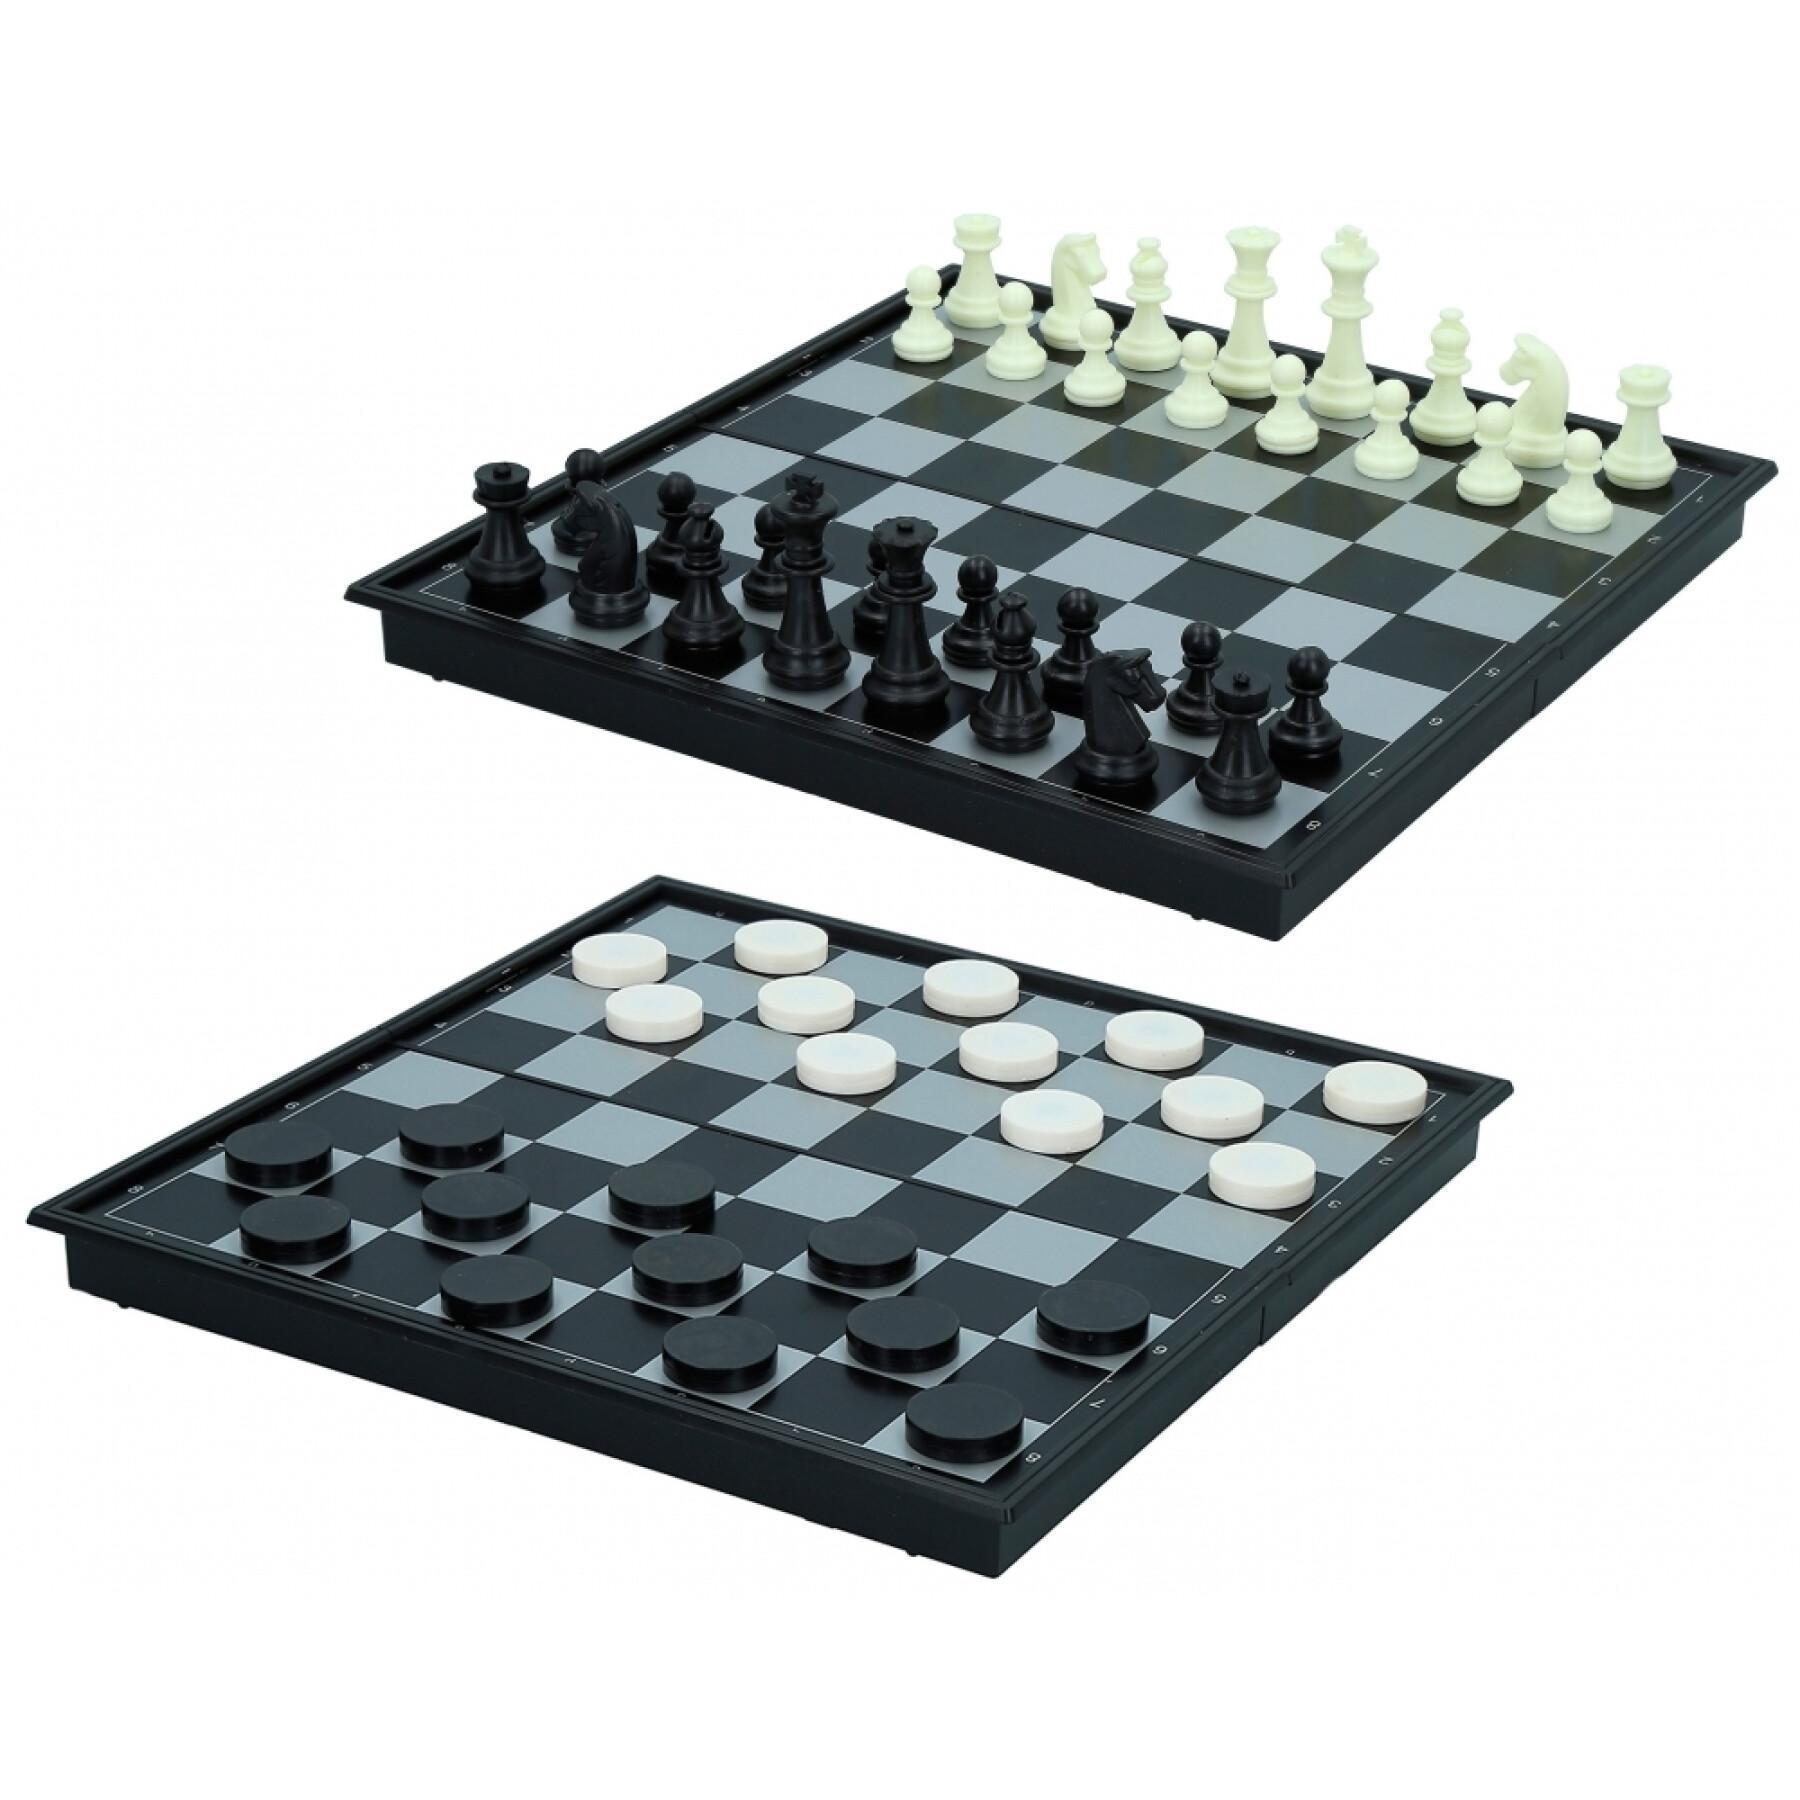 Scacchi/scacchi magnetici CB Games